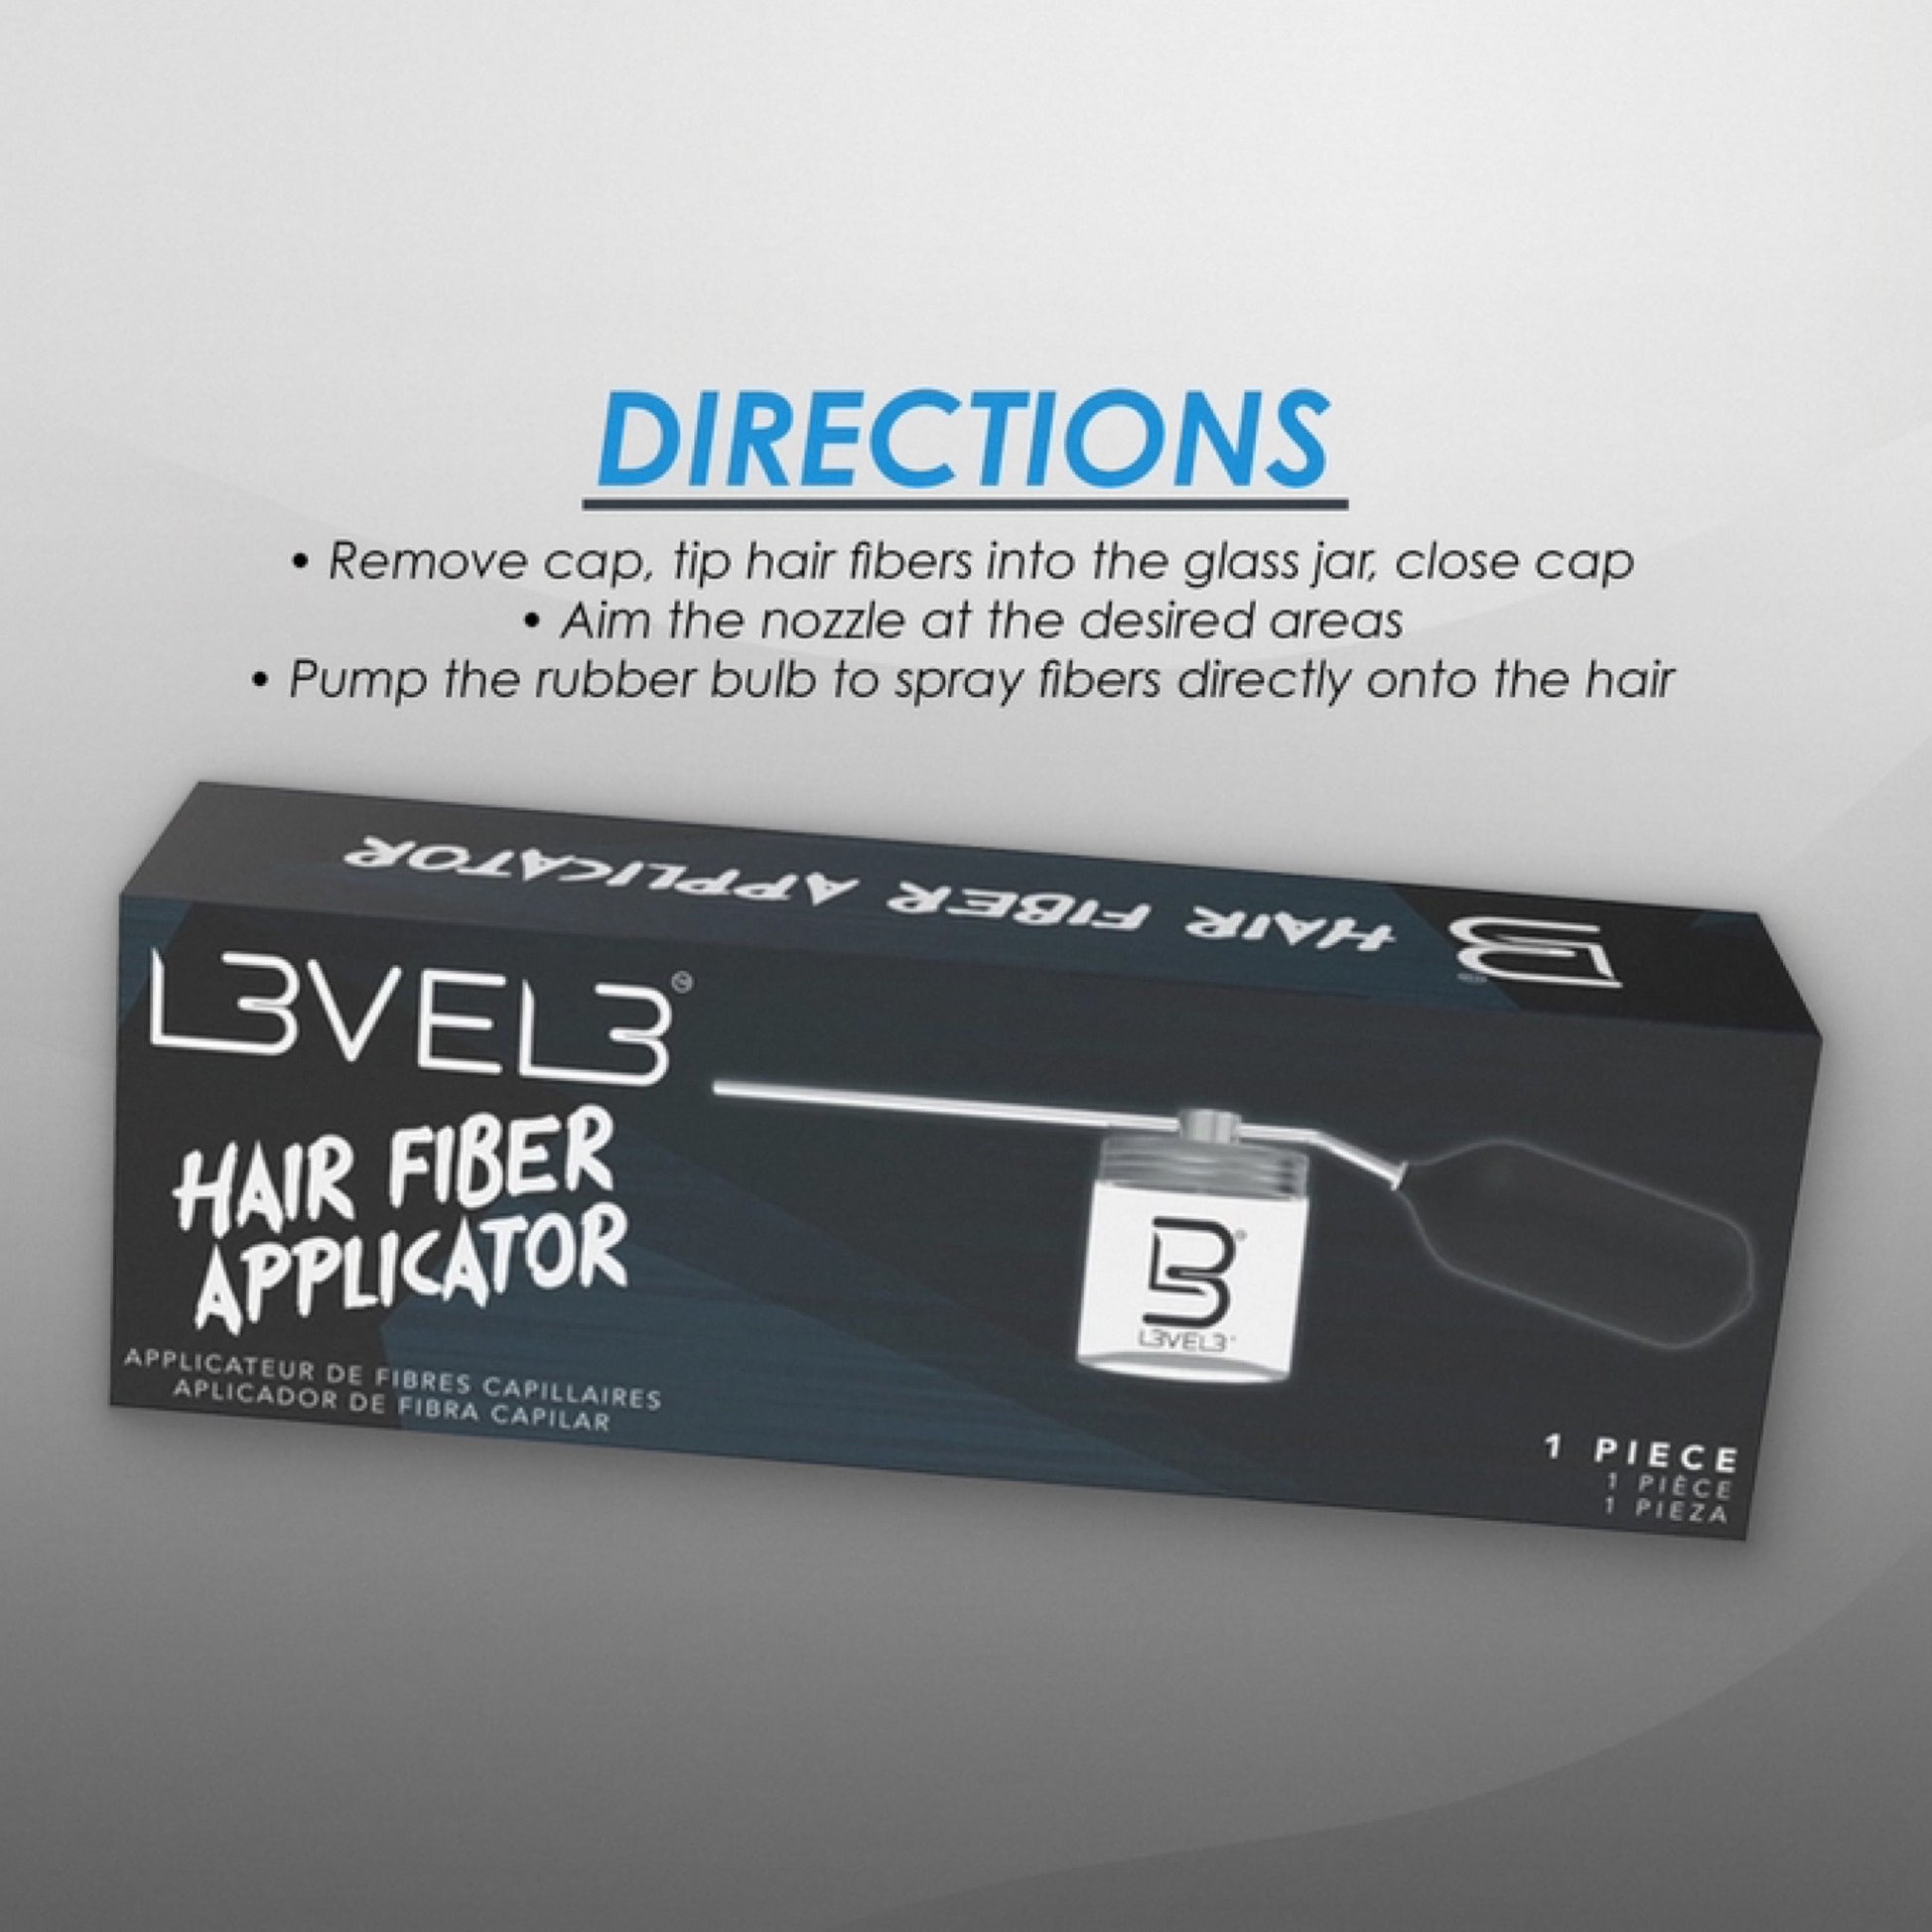 L3VEL3 Hair Fiber Applicator Directions